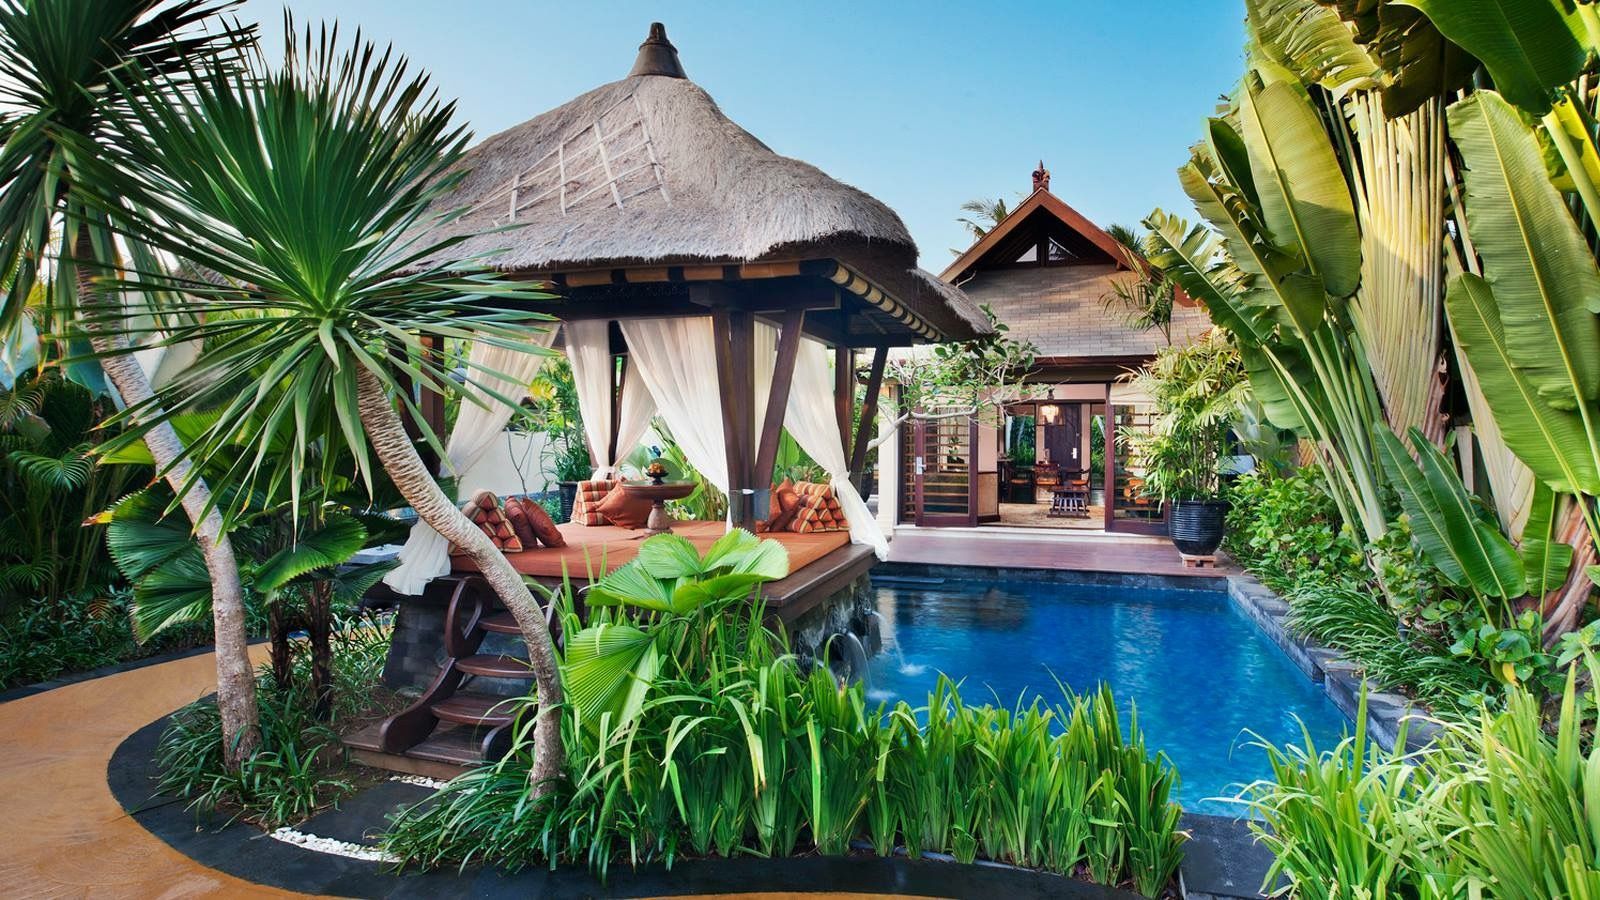 Hotel & Villas. Bali resort, Nusa dua